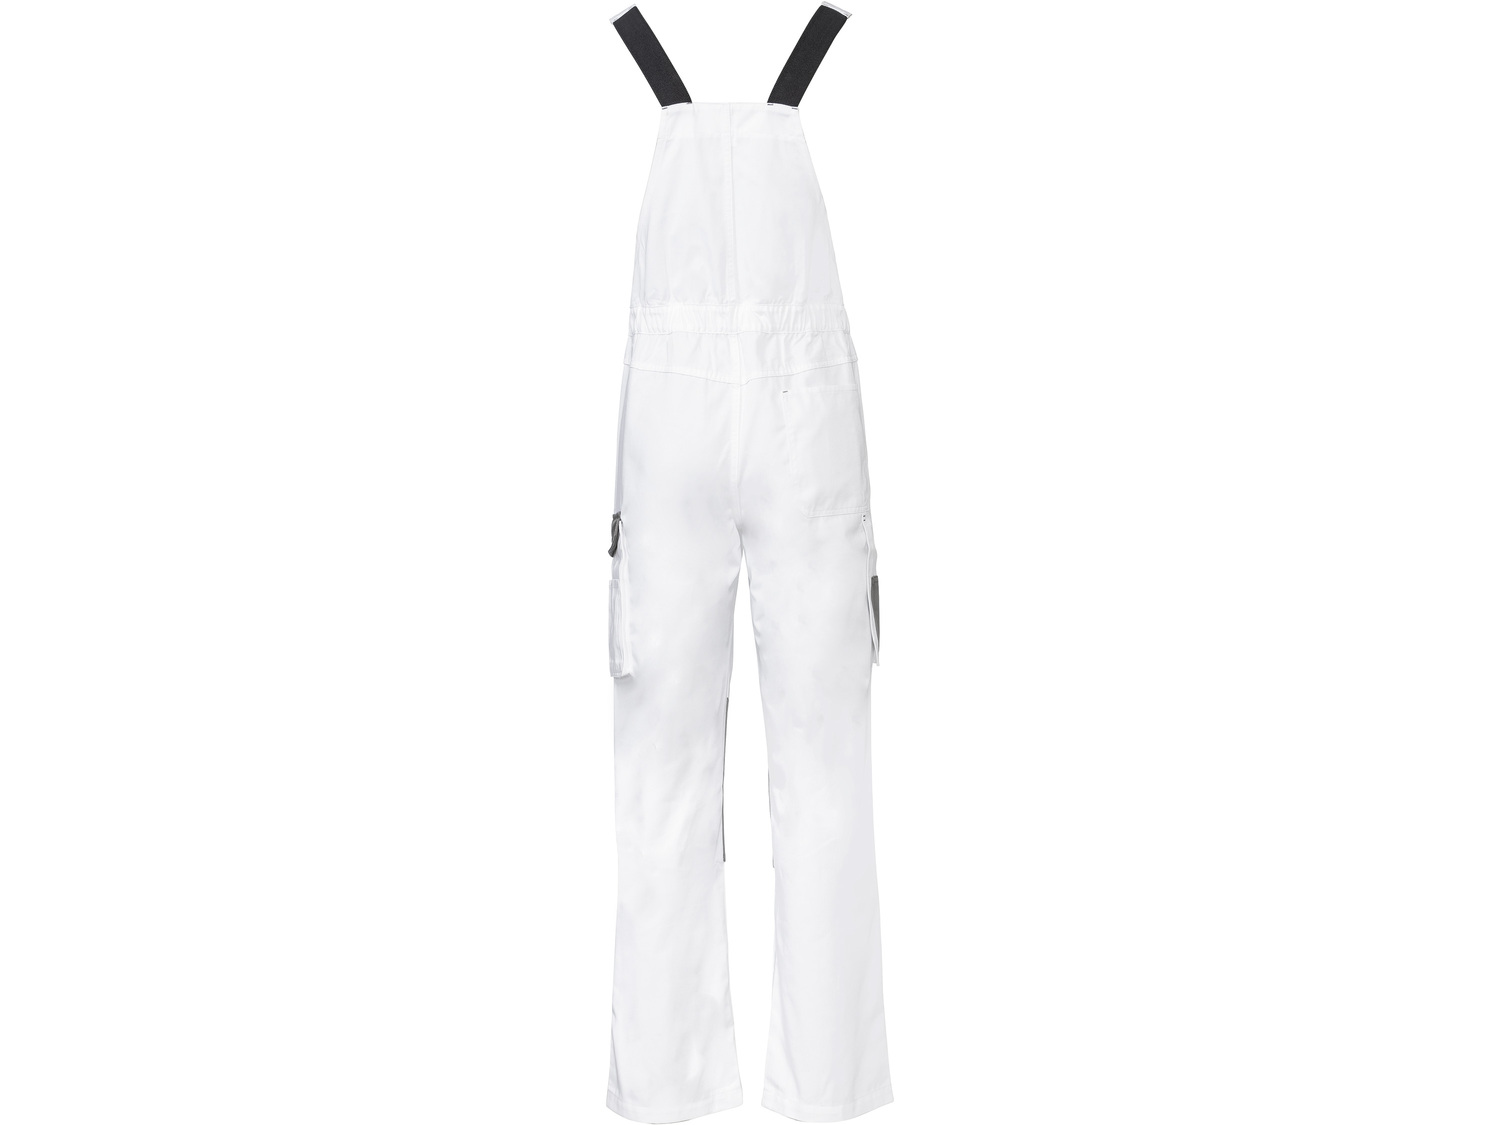 Spodnie robocze Parkside, cena 59,90 PLN 
- z wytrzymałej tkaniny, ze wzmocnionymi ...